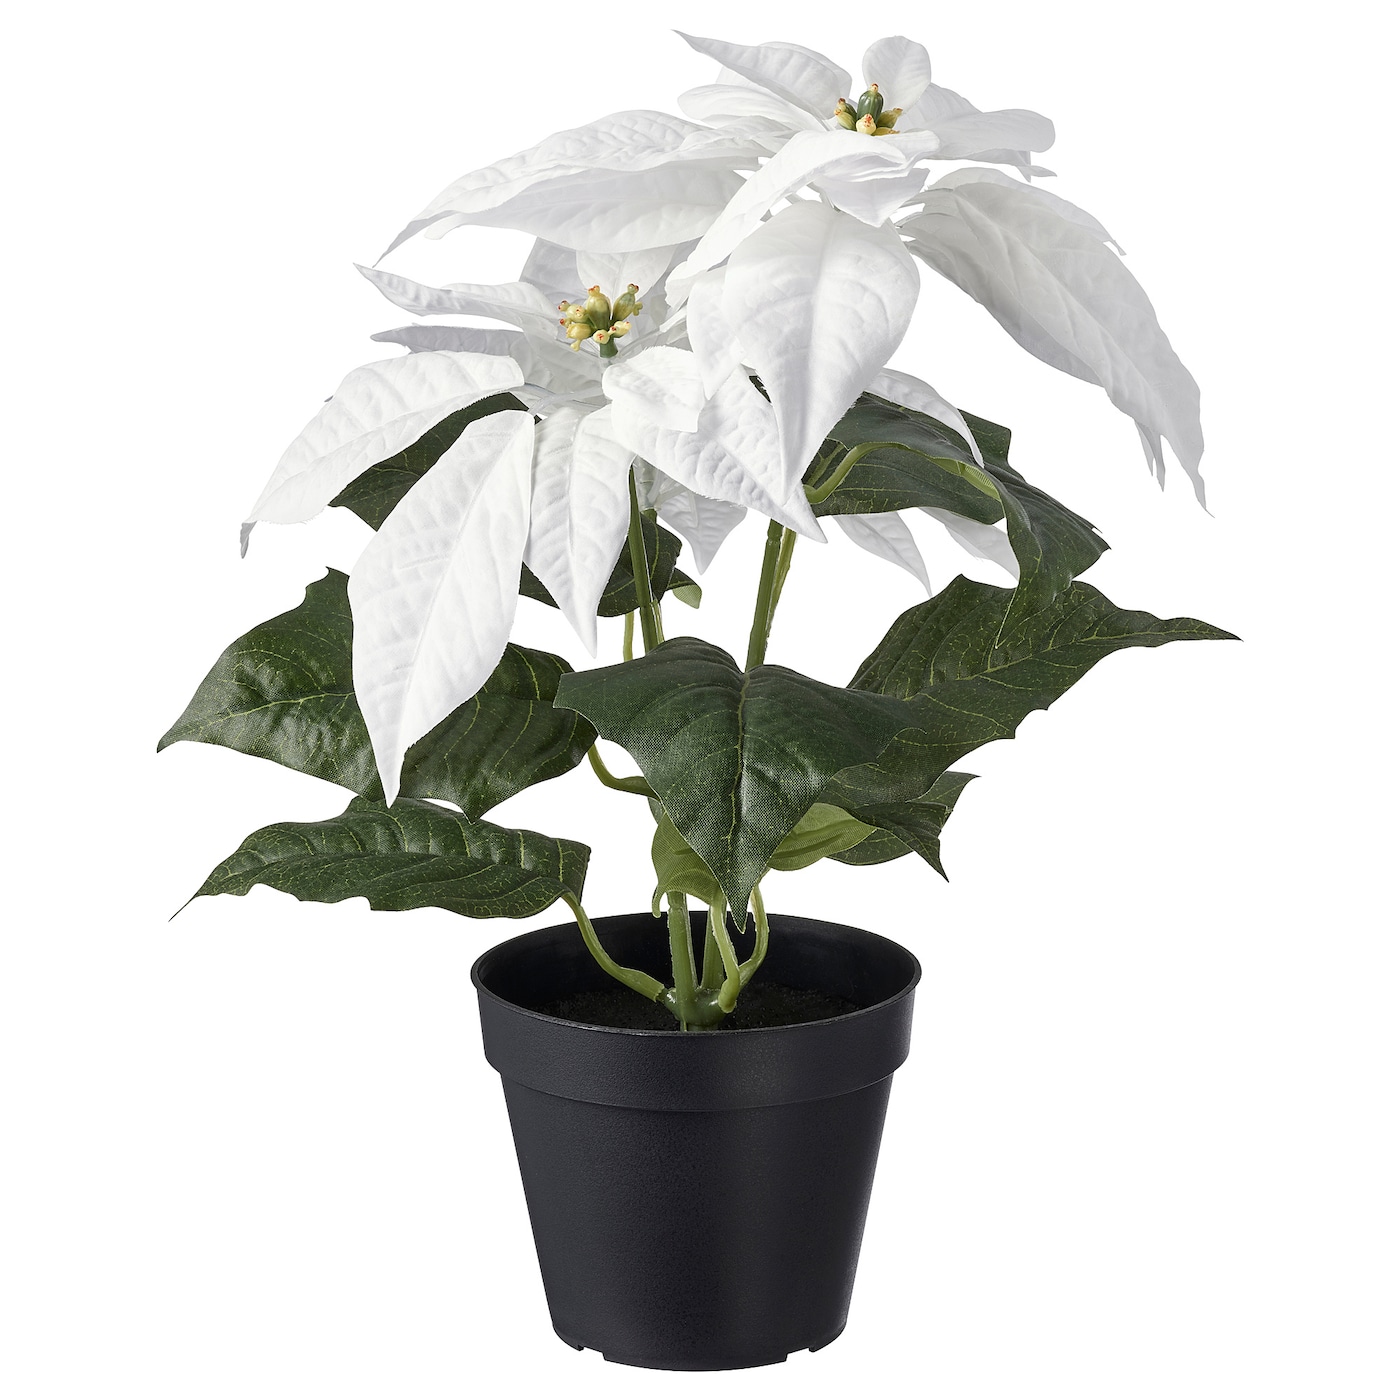 Искусственное растение в горшке - IKEA VINTERFINT, 12 см, ВИНТЕРФИНТ ИКЕА